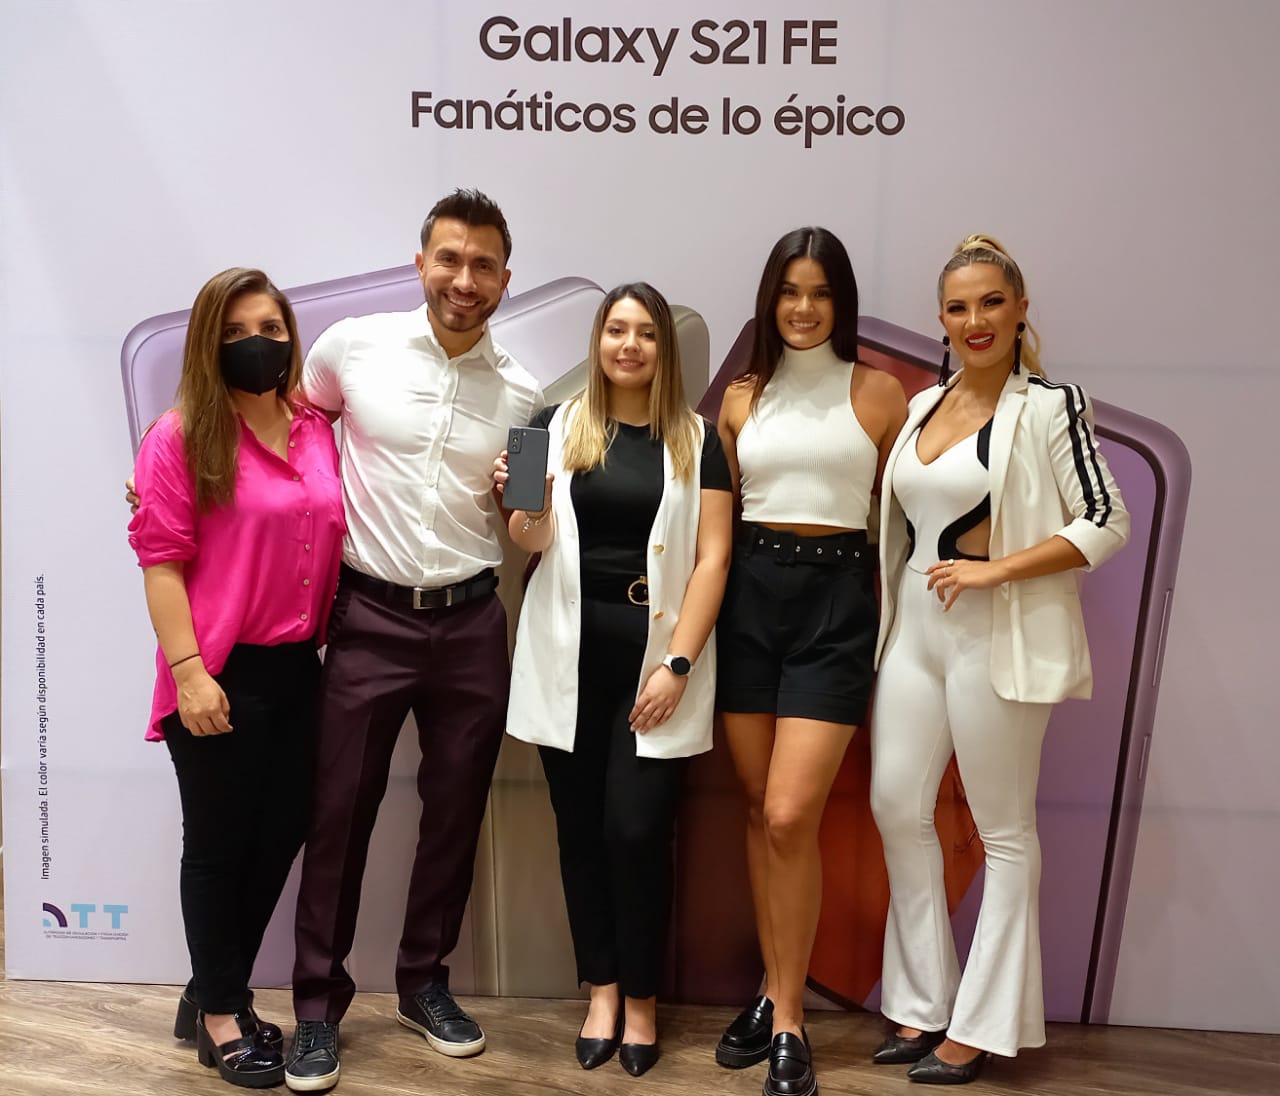 El Galaxy S21 FE llega a Bolivia para los fanáticos de lo épico.